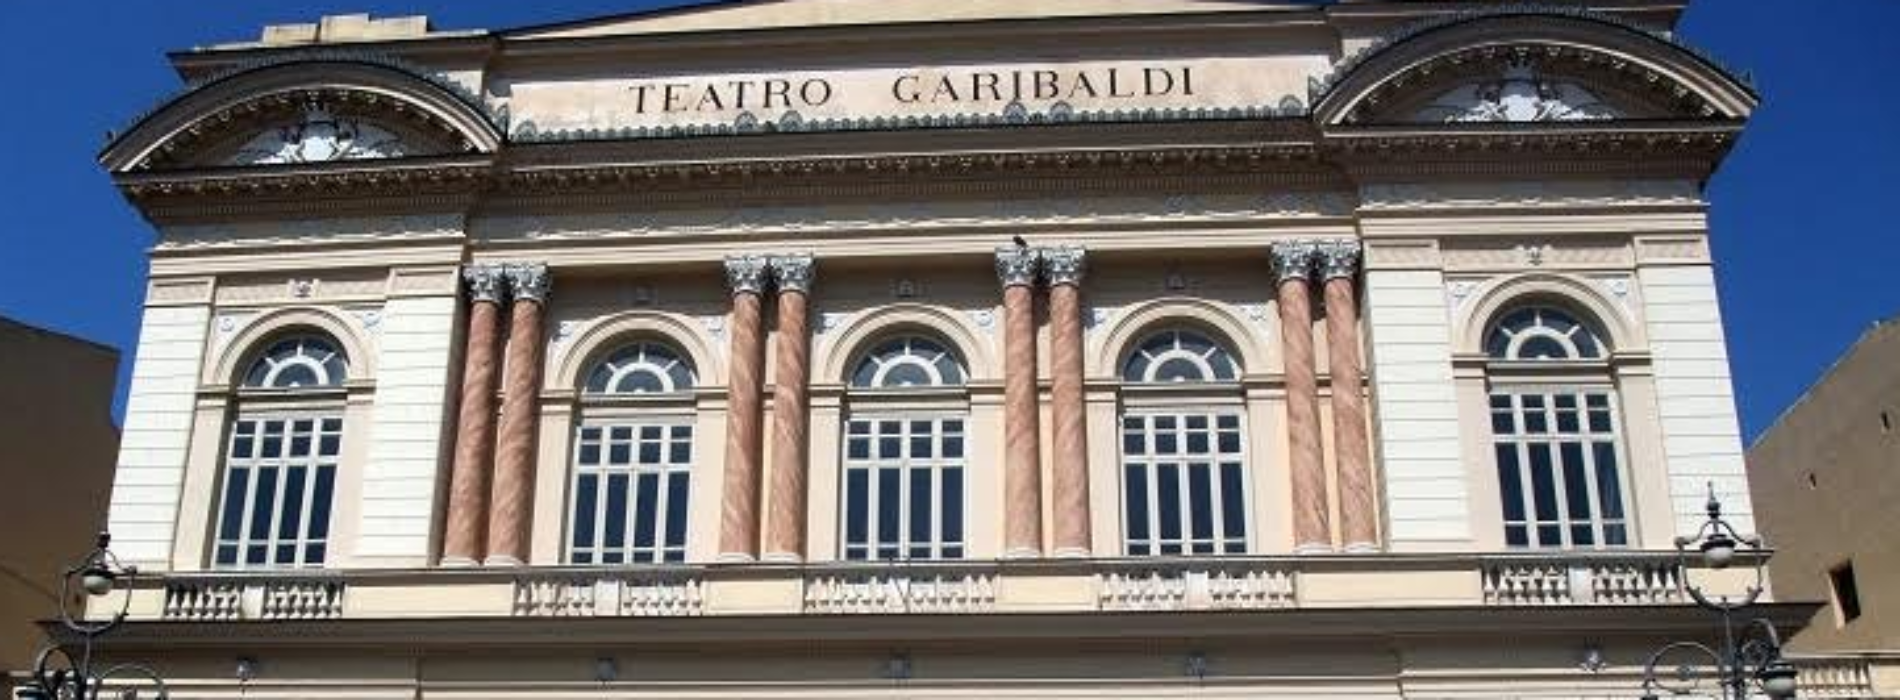 Incontri d’Arte, al Teatro Garibaldi tra musica teatro e poesia